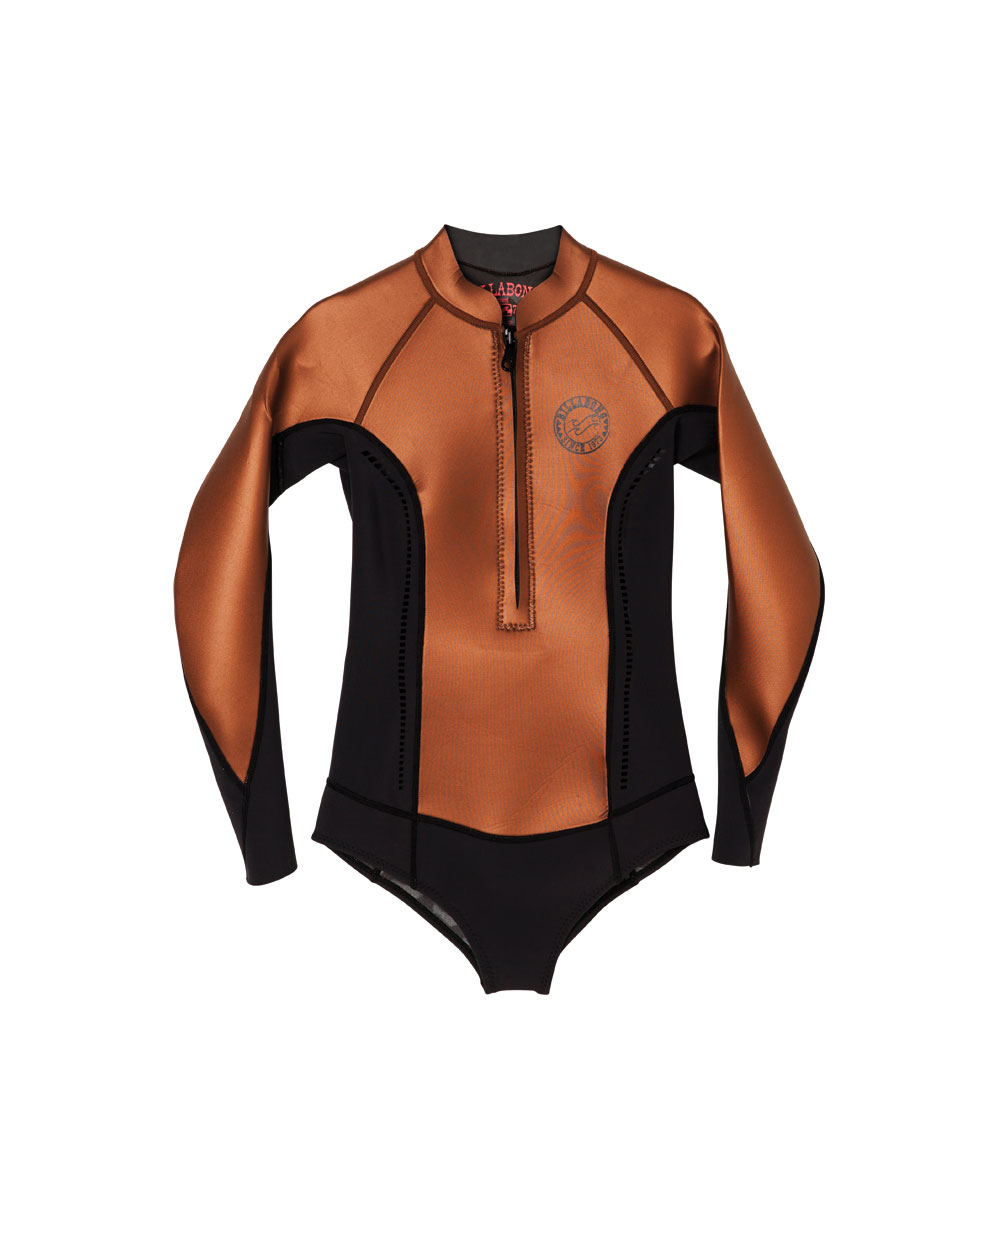 Billabong wetsuit, $169.99